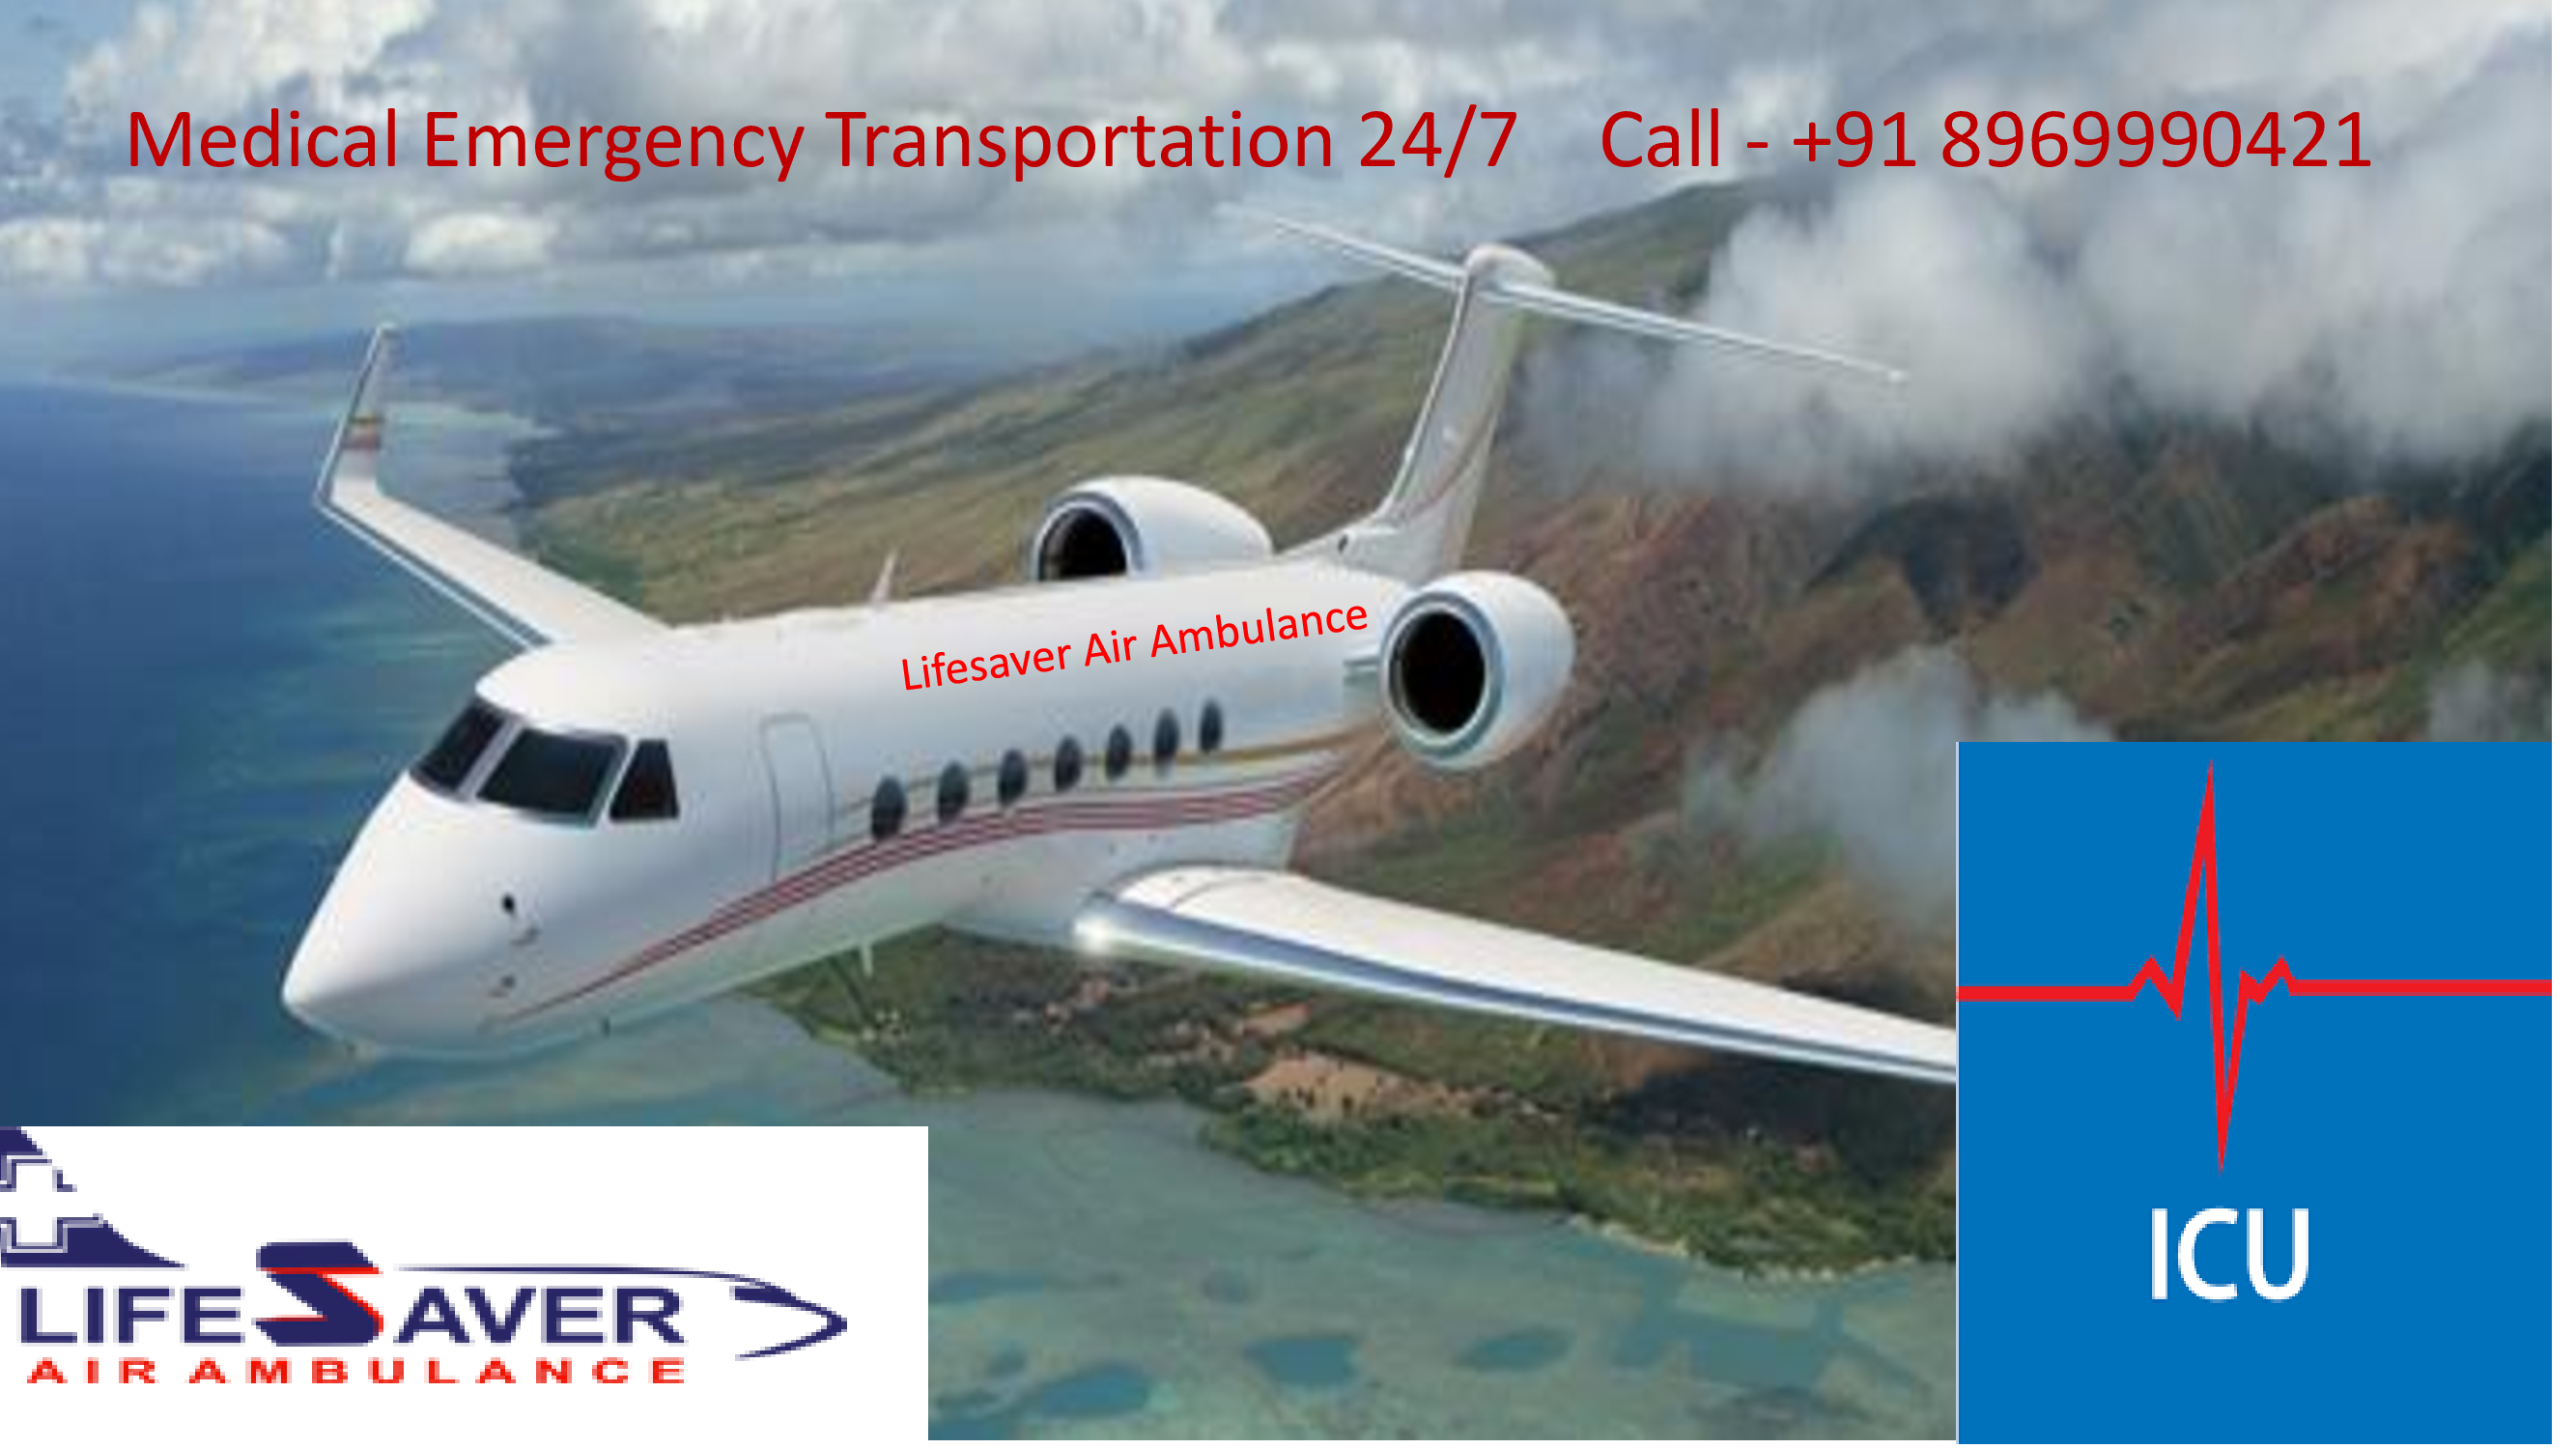 Lifesaver Air Ambulance 2